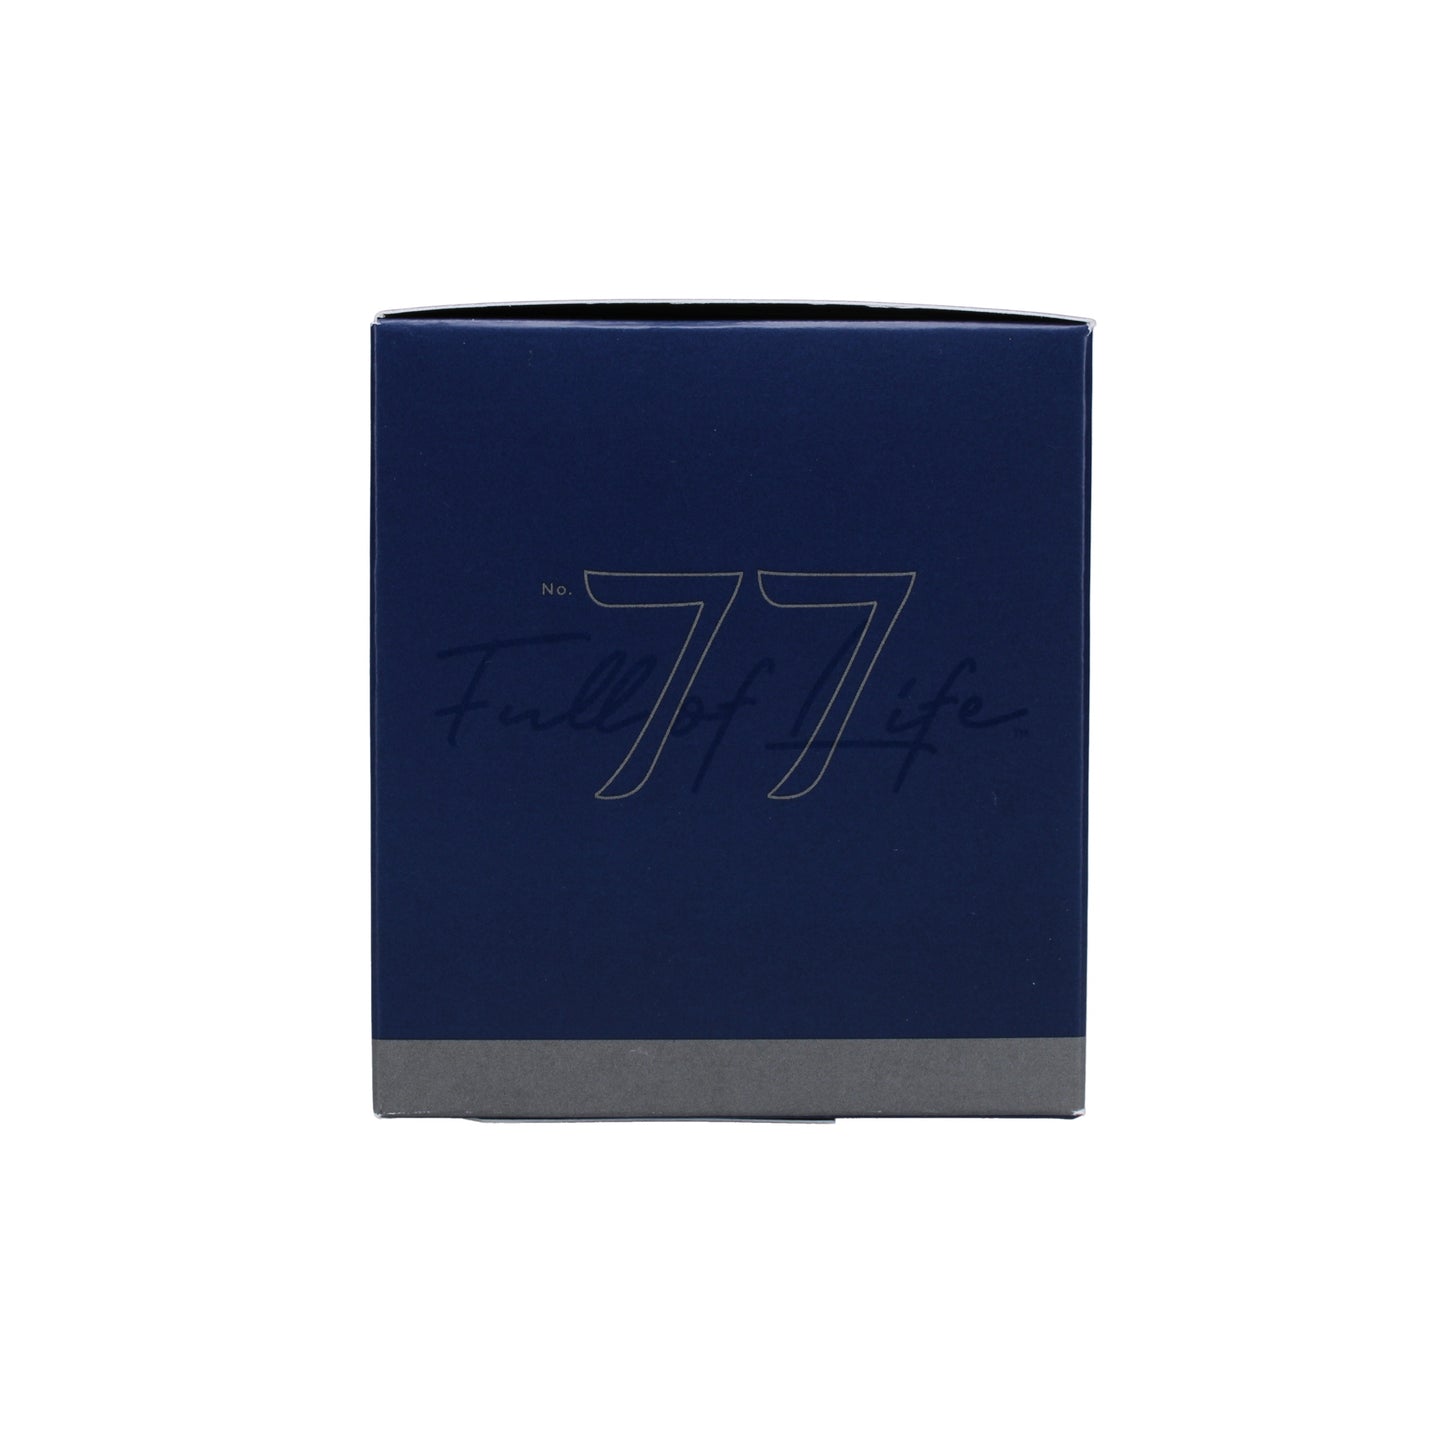 No. 77 Palo Santo 7 oz. Candle in Signature Box Image 6